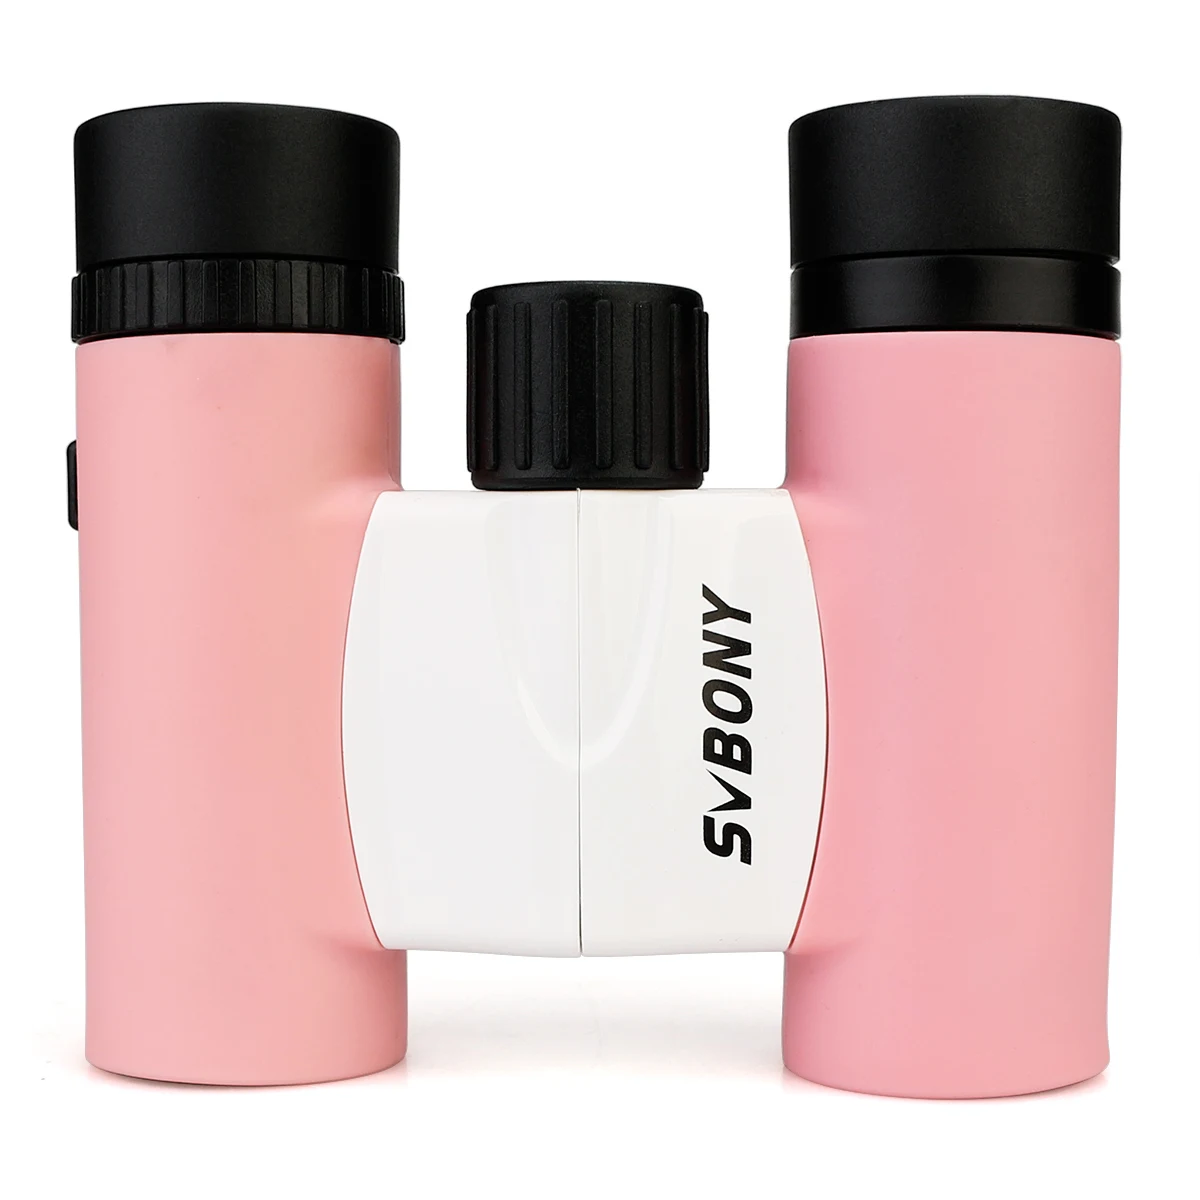 SVBONY 8x22 резина+ АБС пластик ультра компактный маленький Порро Призма вращающаяся маска для глаз дорожный бинокль лучшие подарки для детей розовый